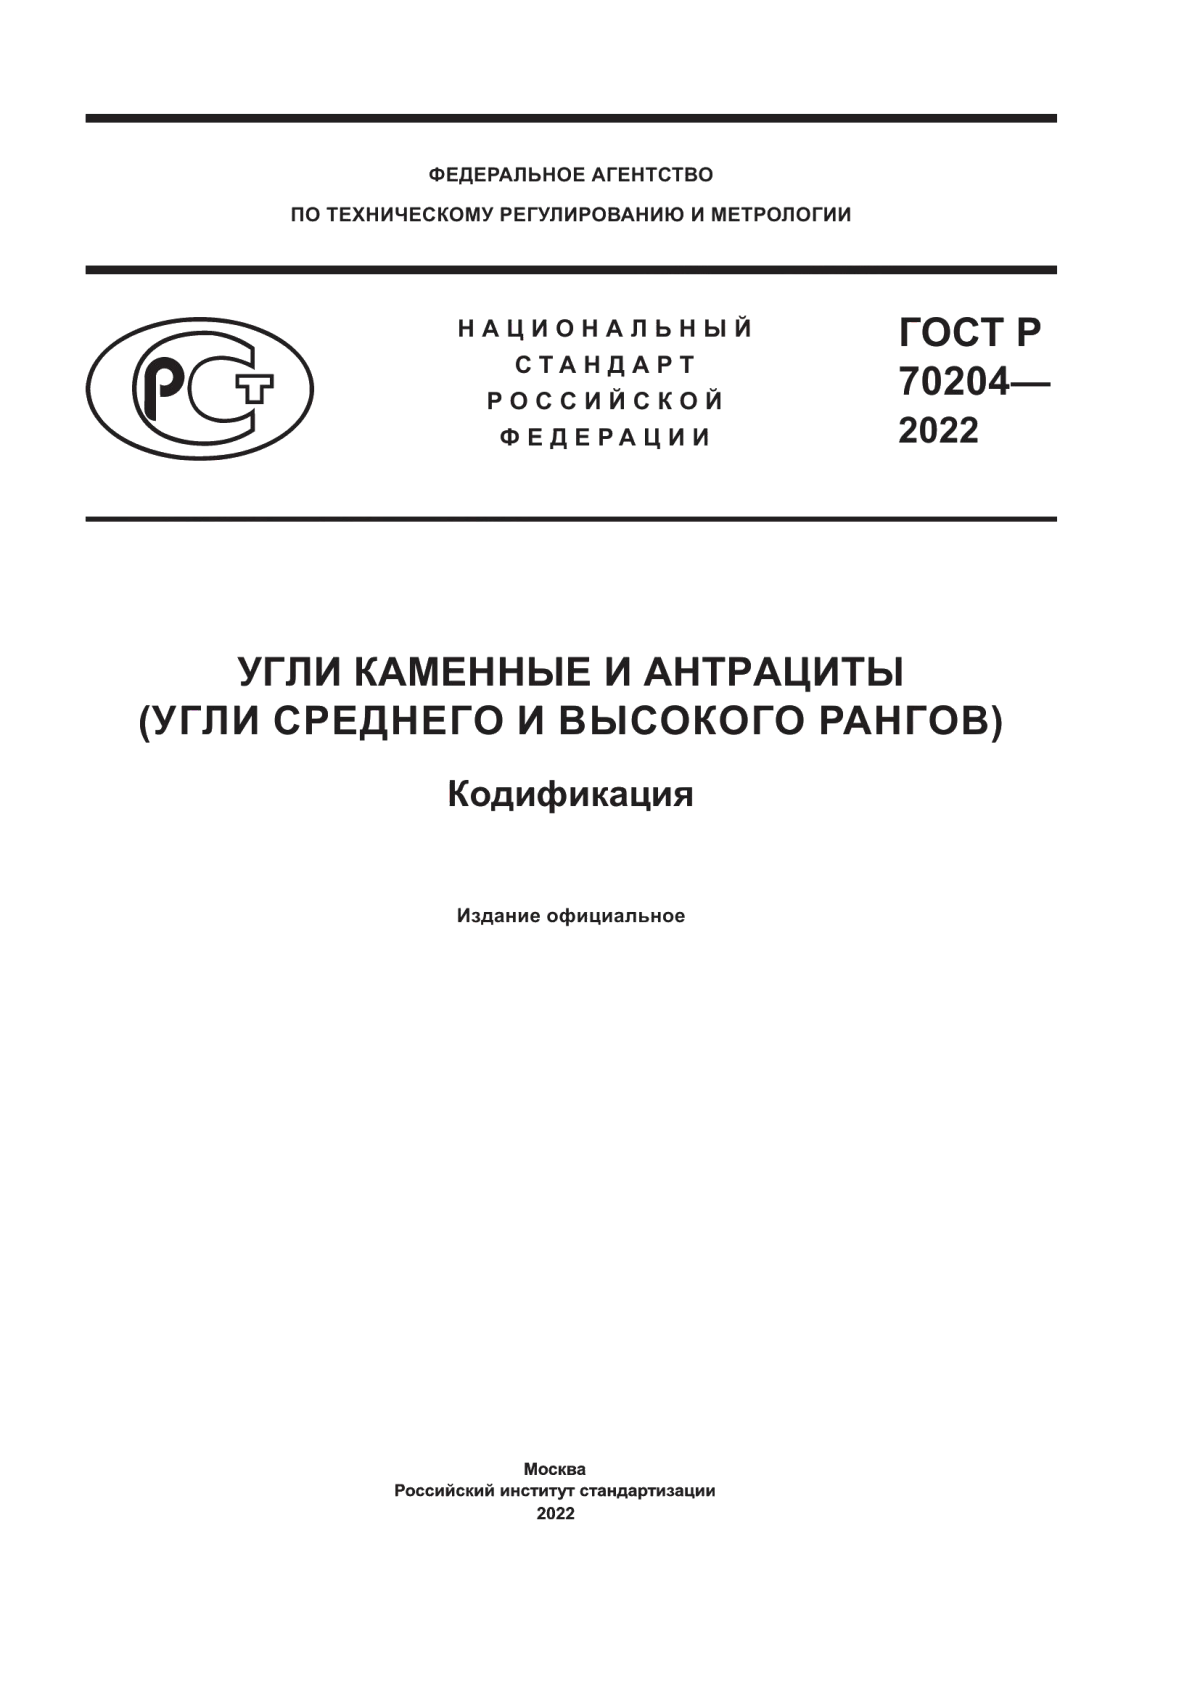 ГОСТ Р 70204-2022 Угли каменные и антрациты (угли среднего и высокого рангов). Кодификация